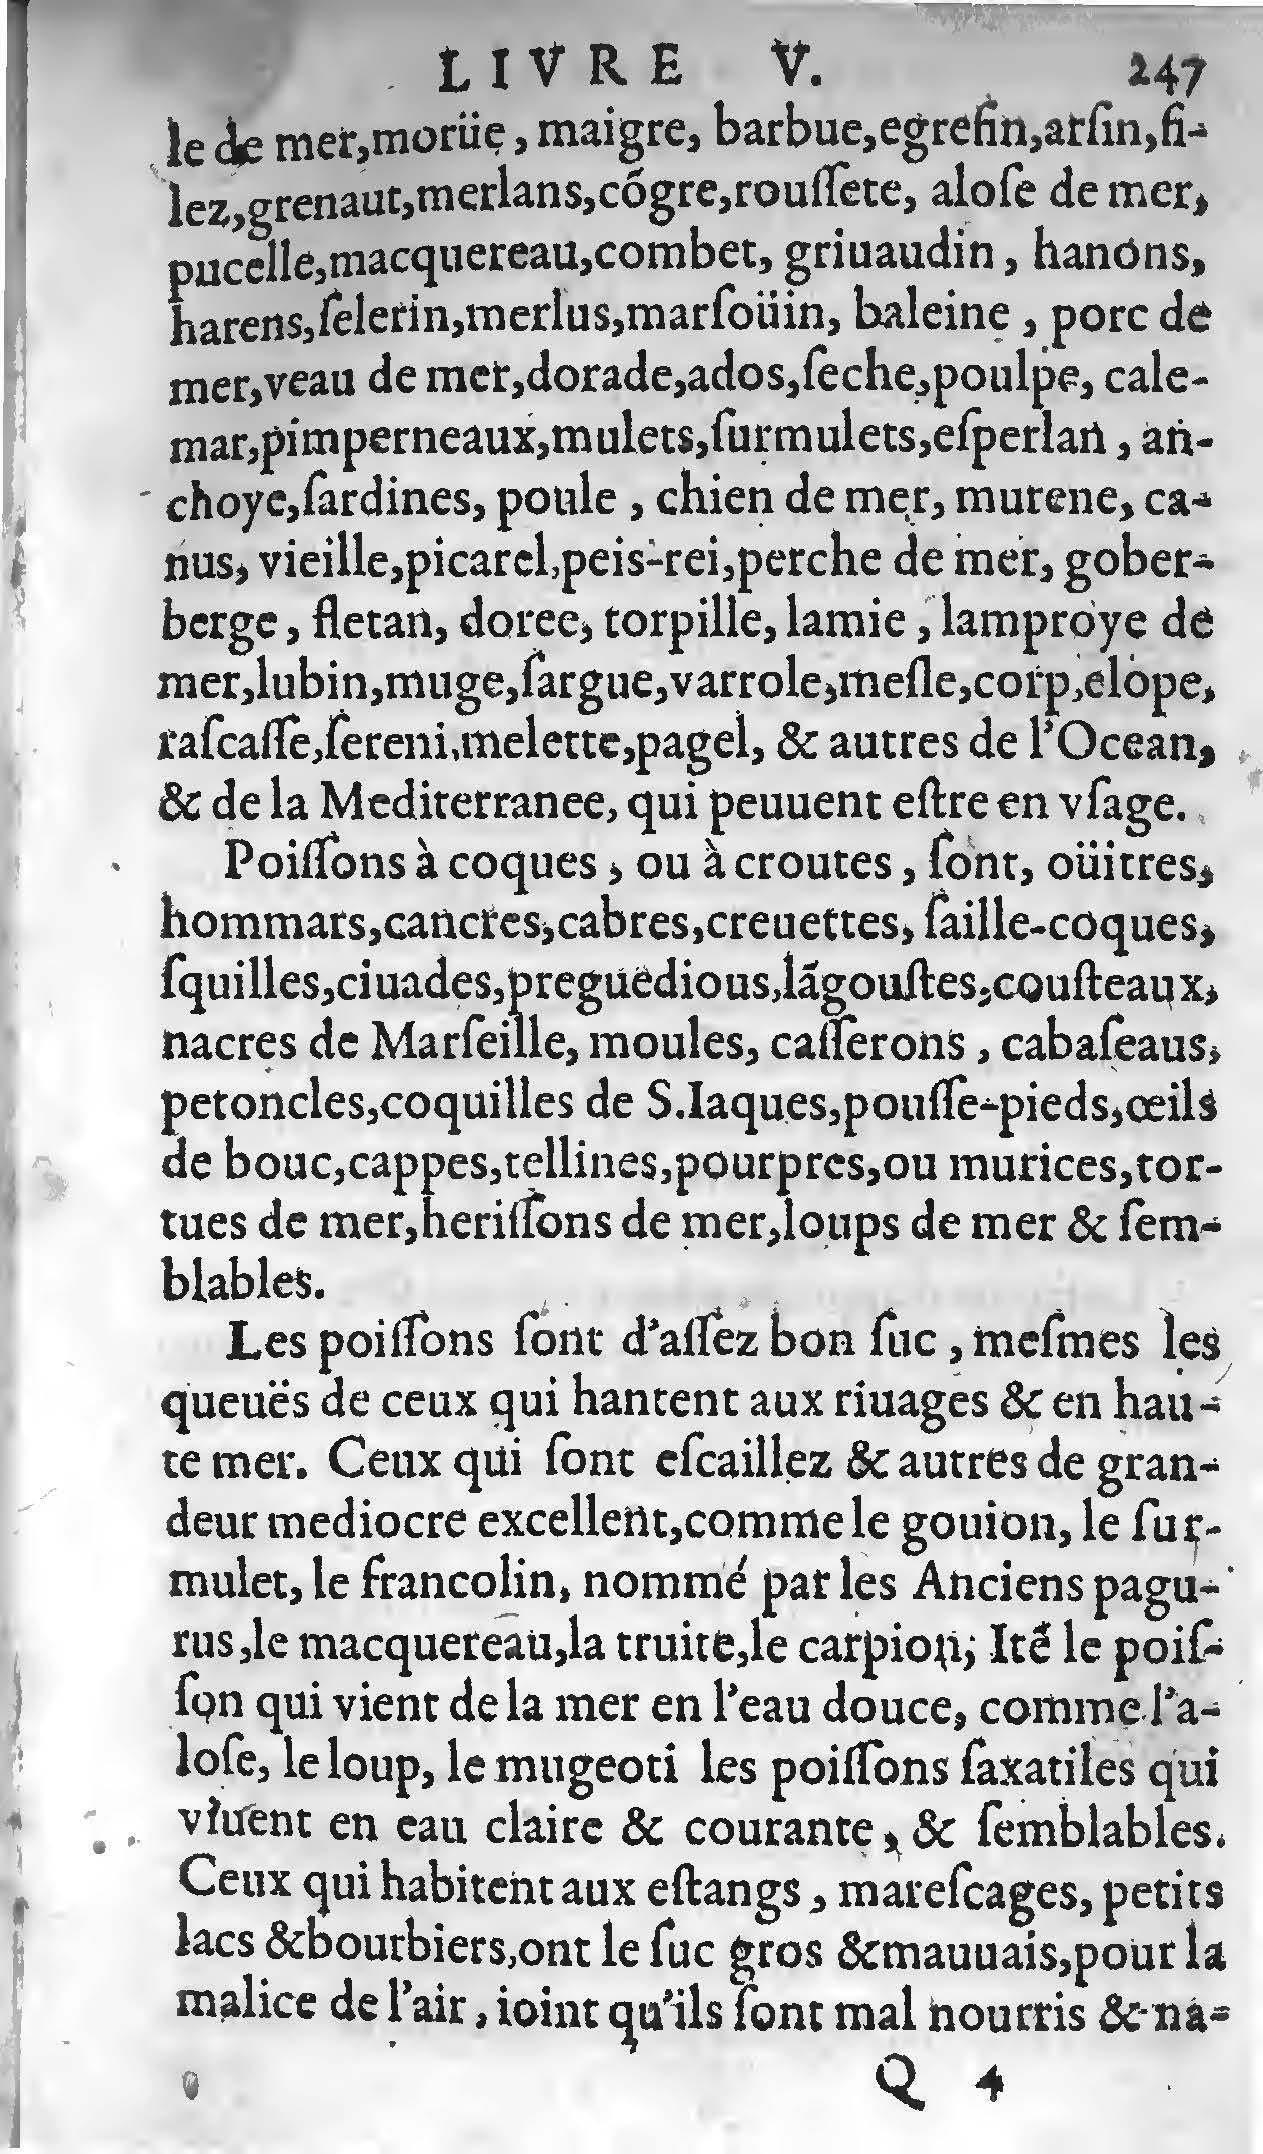 1607 Étienne Servain et Jean Antoine Huguetan - Trésor de santé ou ménage de la vie humaine - BIU Santé_Page_267.jpg